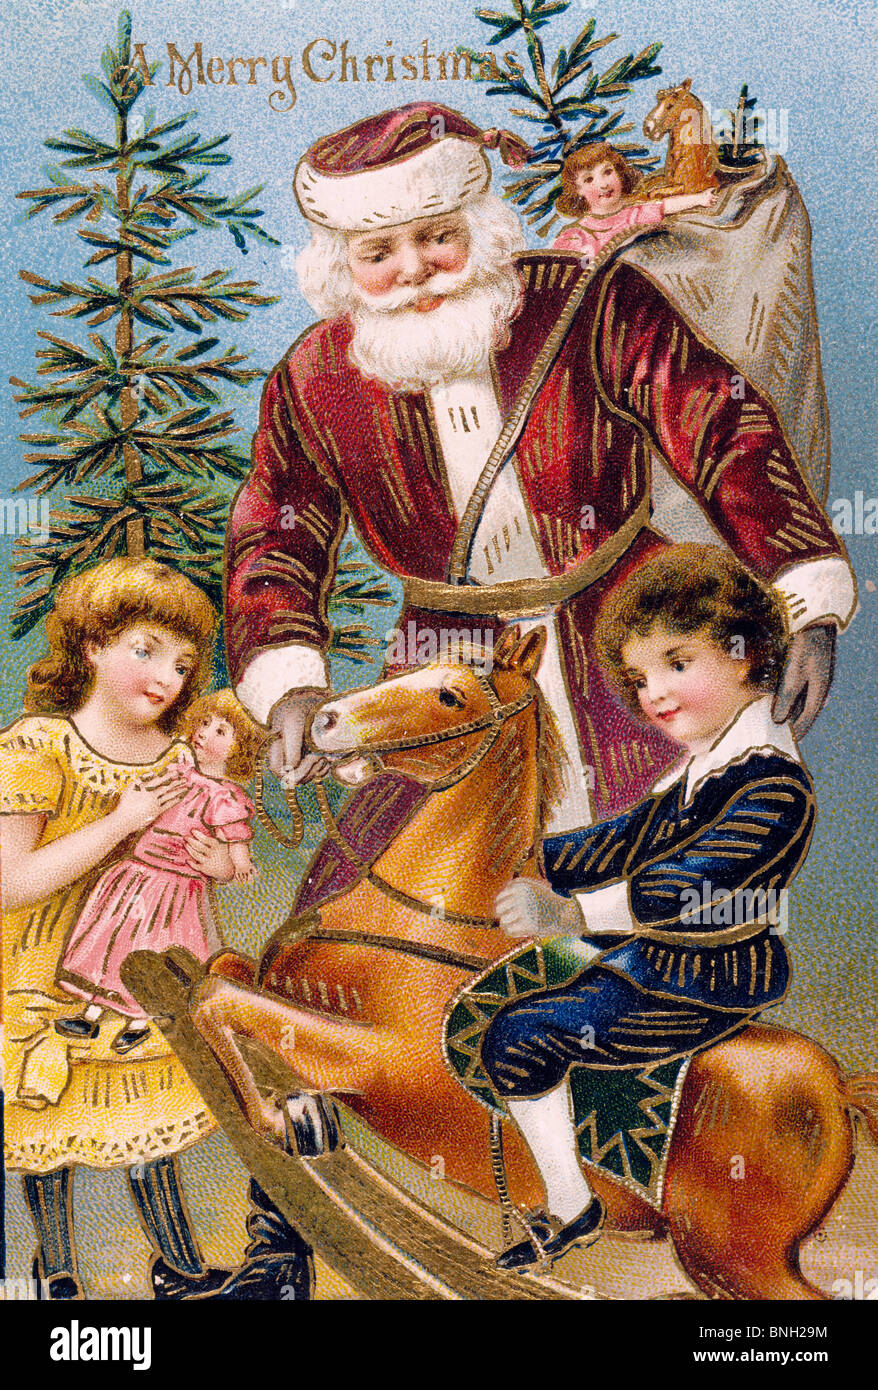 Merry Christmas, Nostalgia Cards Stock Photo